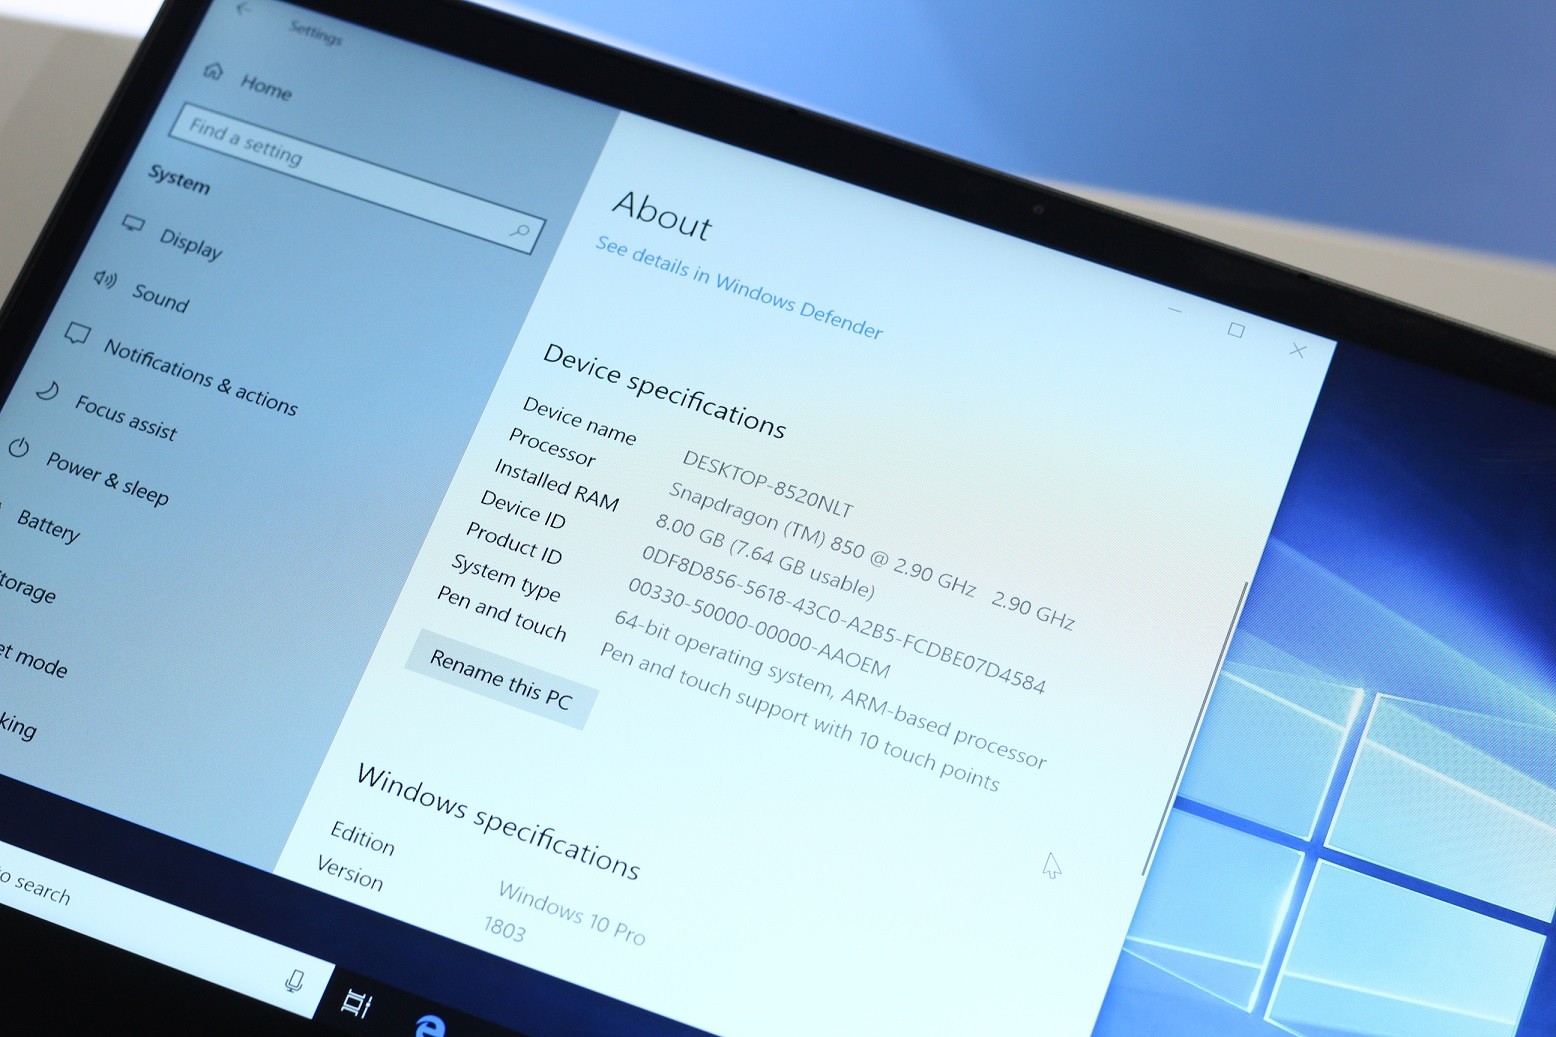 Microsoft implementiert Account-Werbebanner in Windows 10 Einstellungen